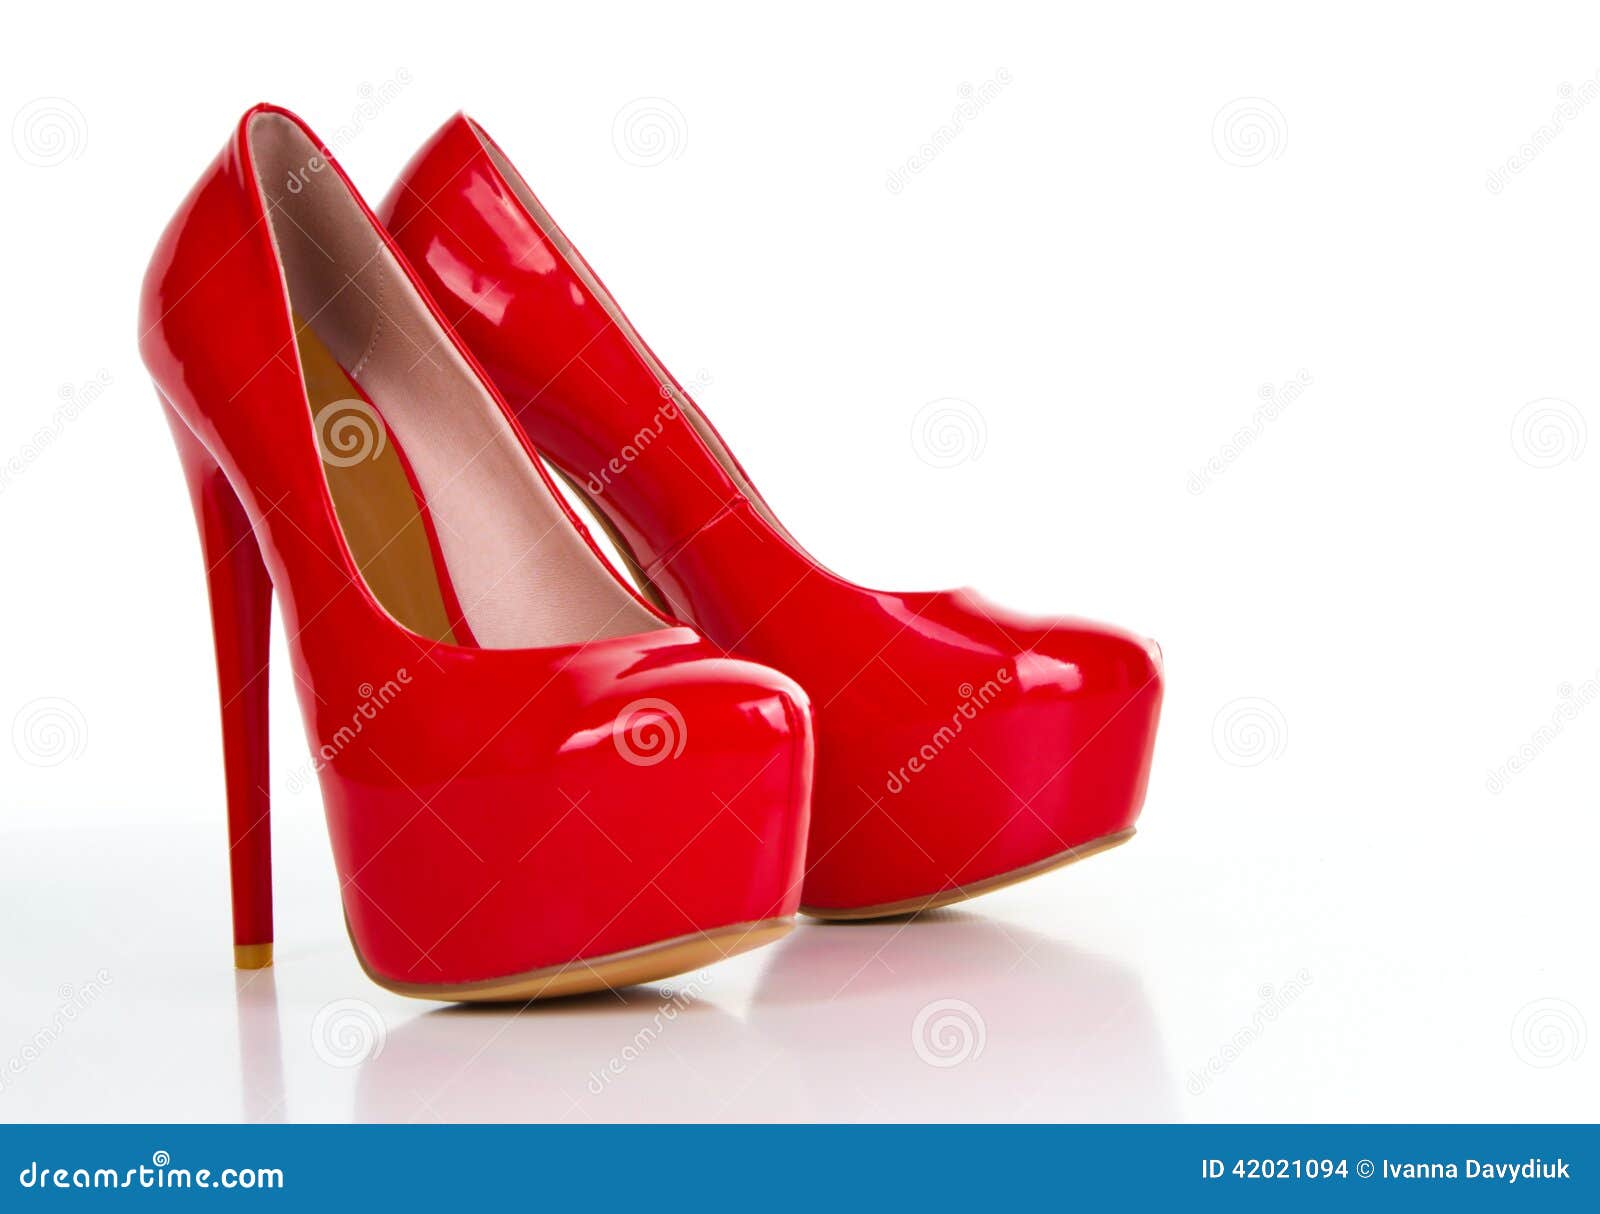 Chaussure rouge de femmes de talon haut d'isolement sur le fond blanc.